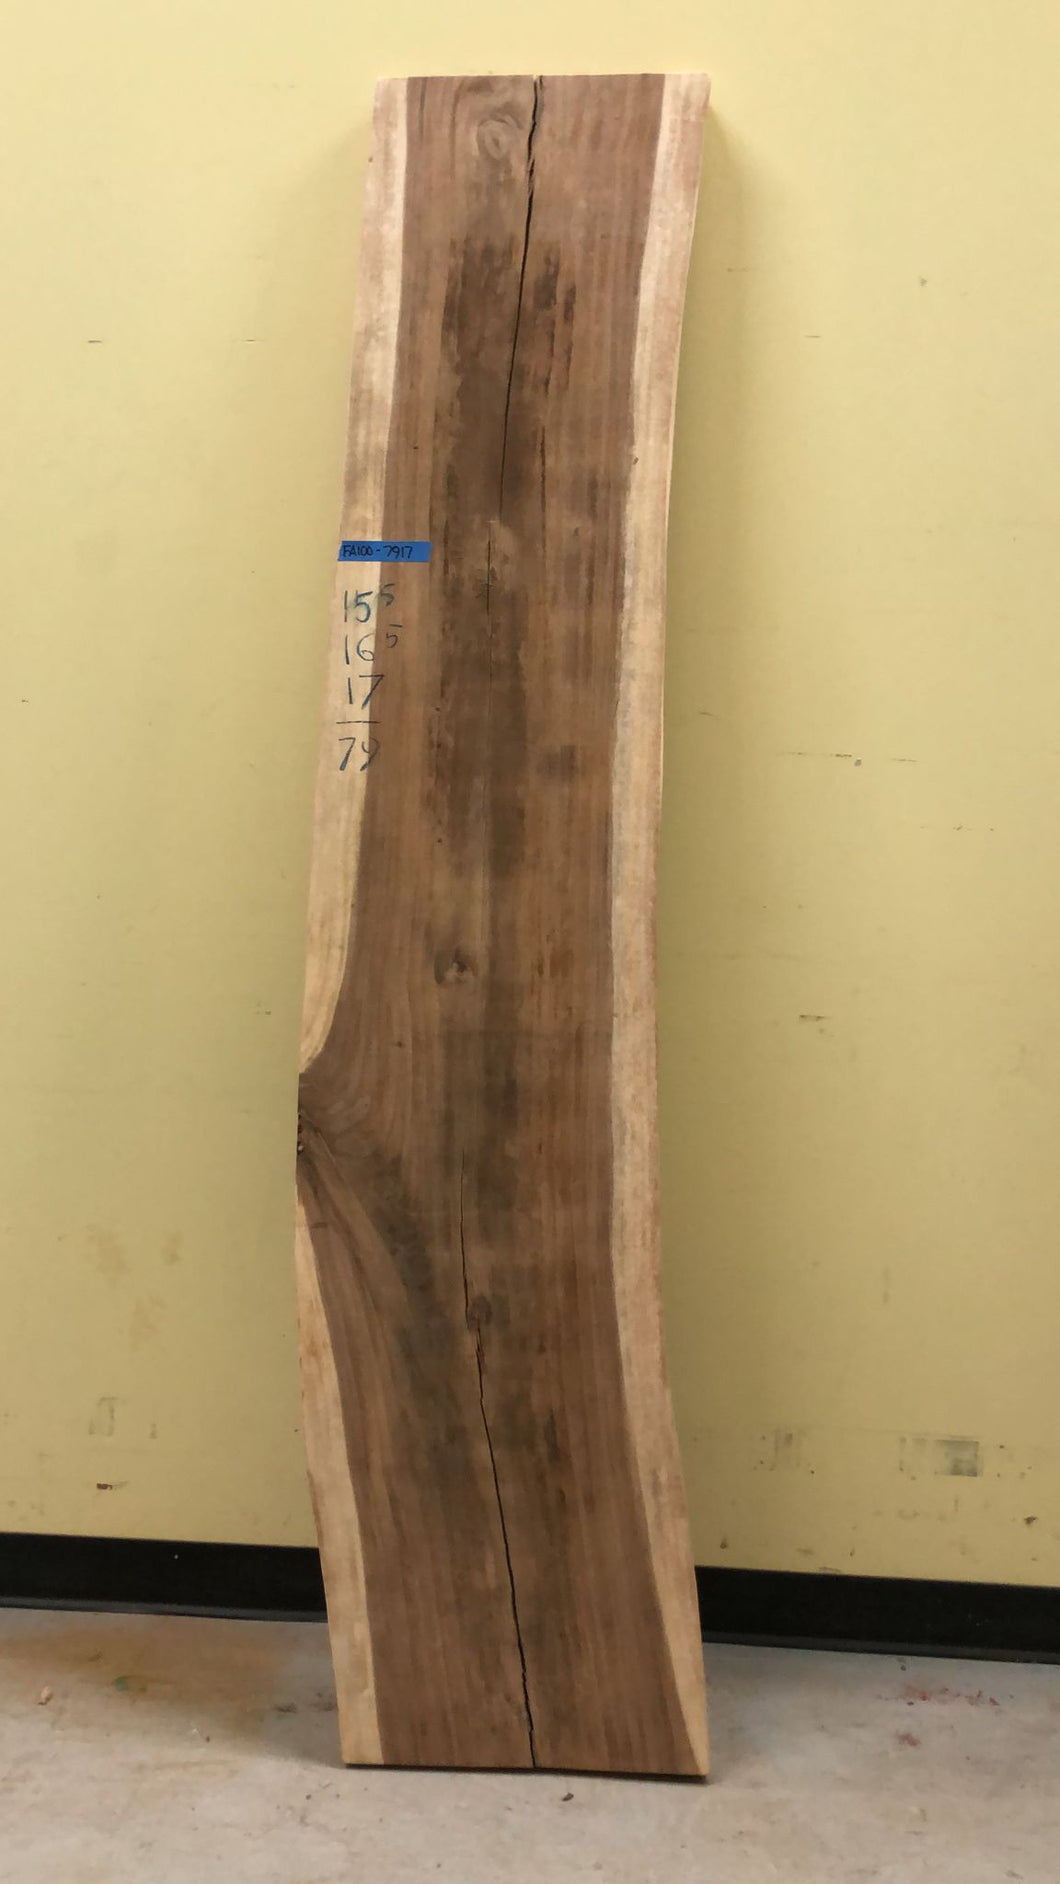 FA100-7917 Live edge acacia wood